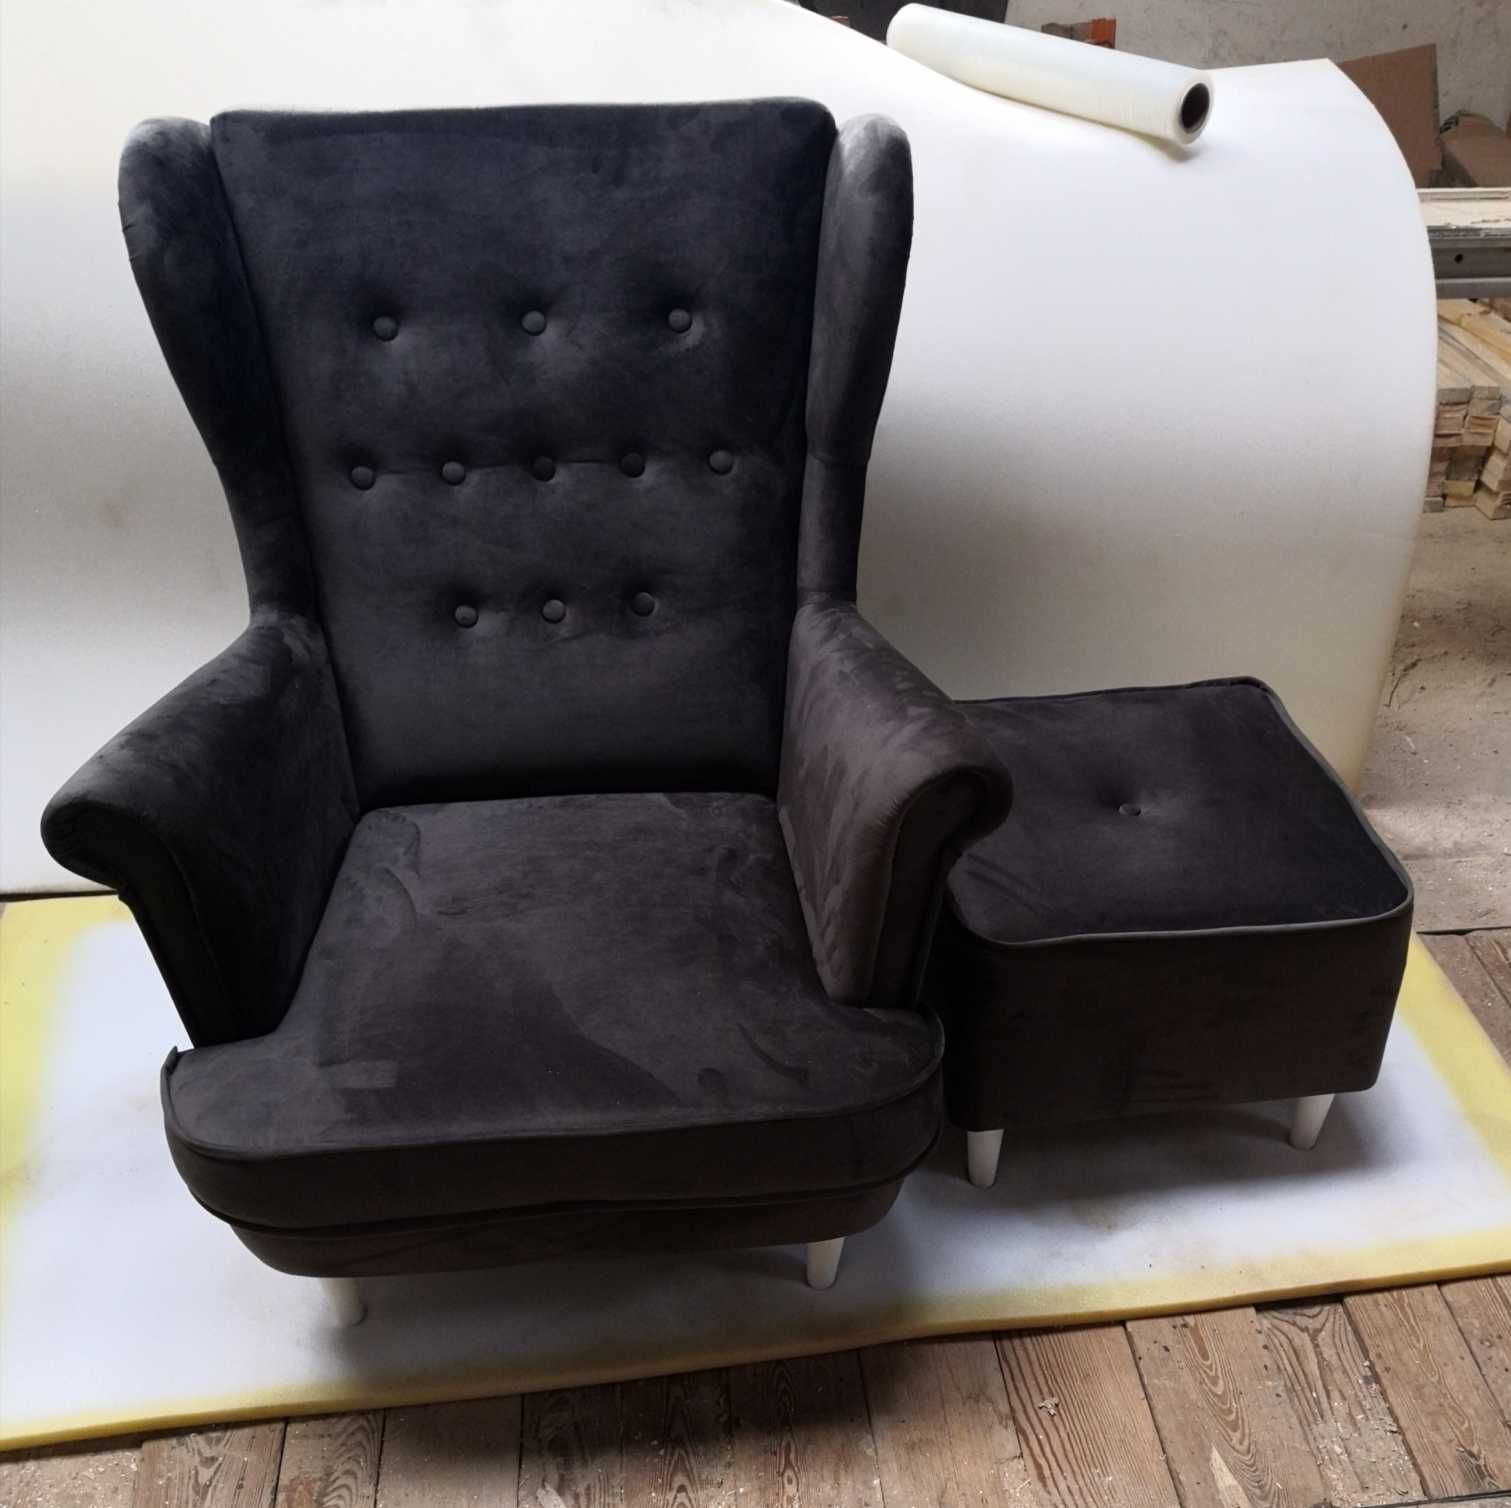 Fotele nowoczesne